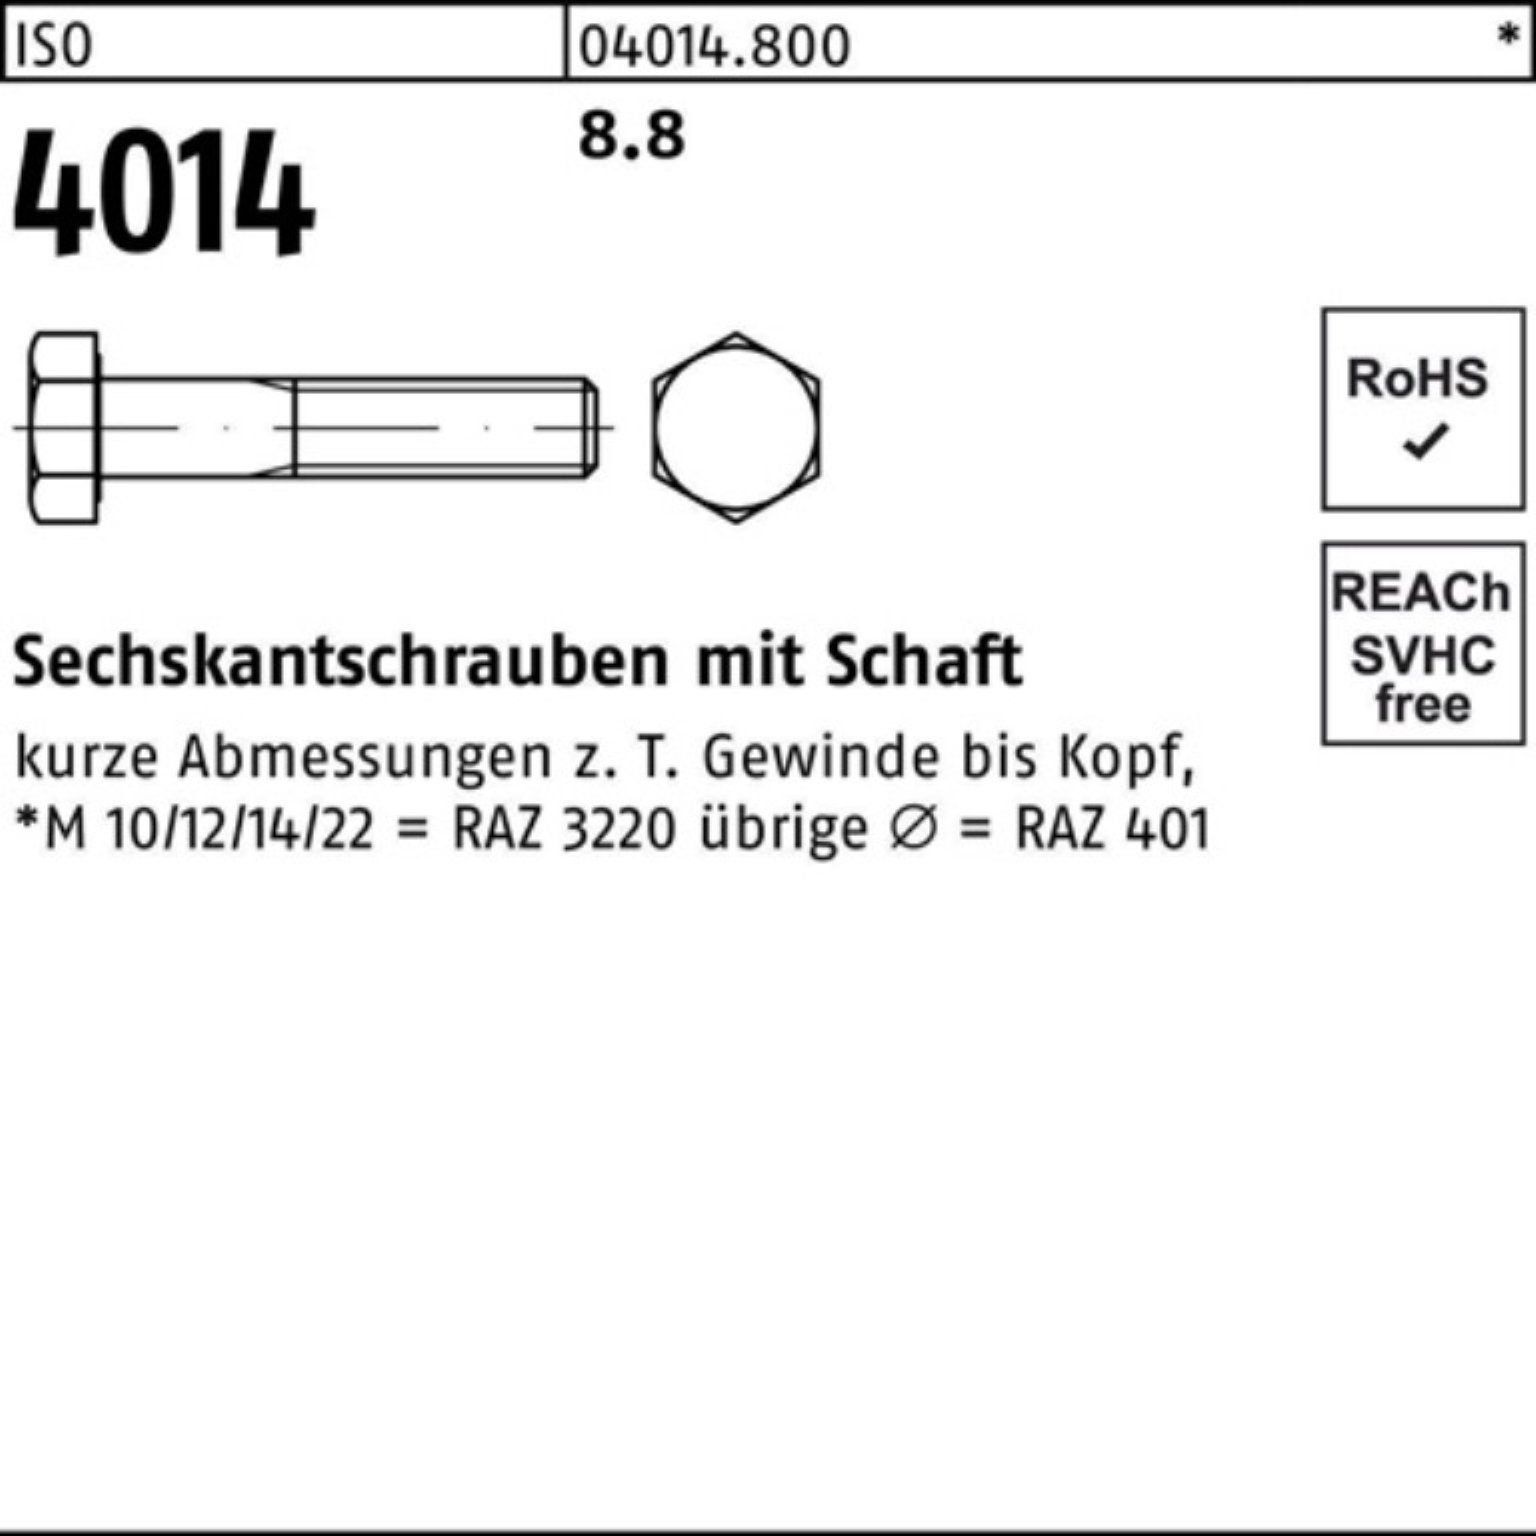 Sechskantschraube Sechskantschraube 100er ISO 1 Bufab M56x 8.8 Schaft Stück Pack 130 4014 ISO